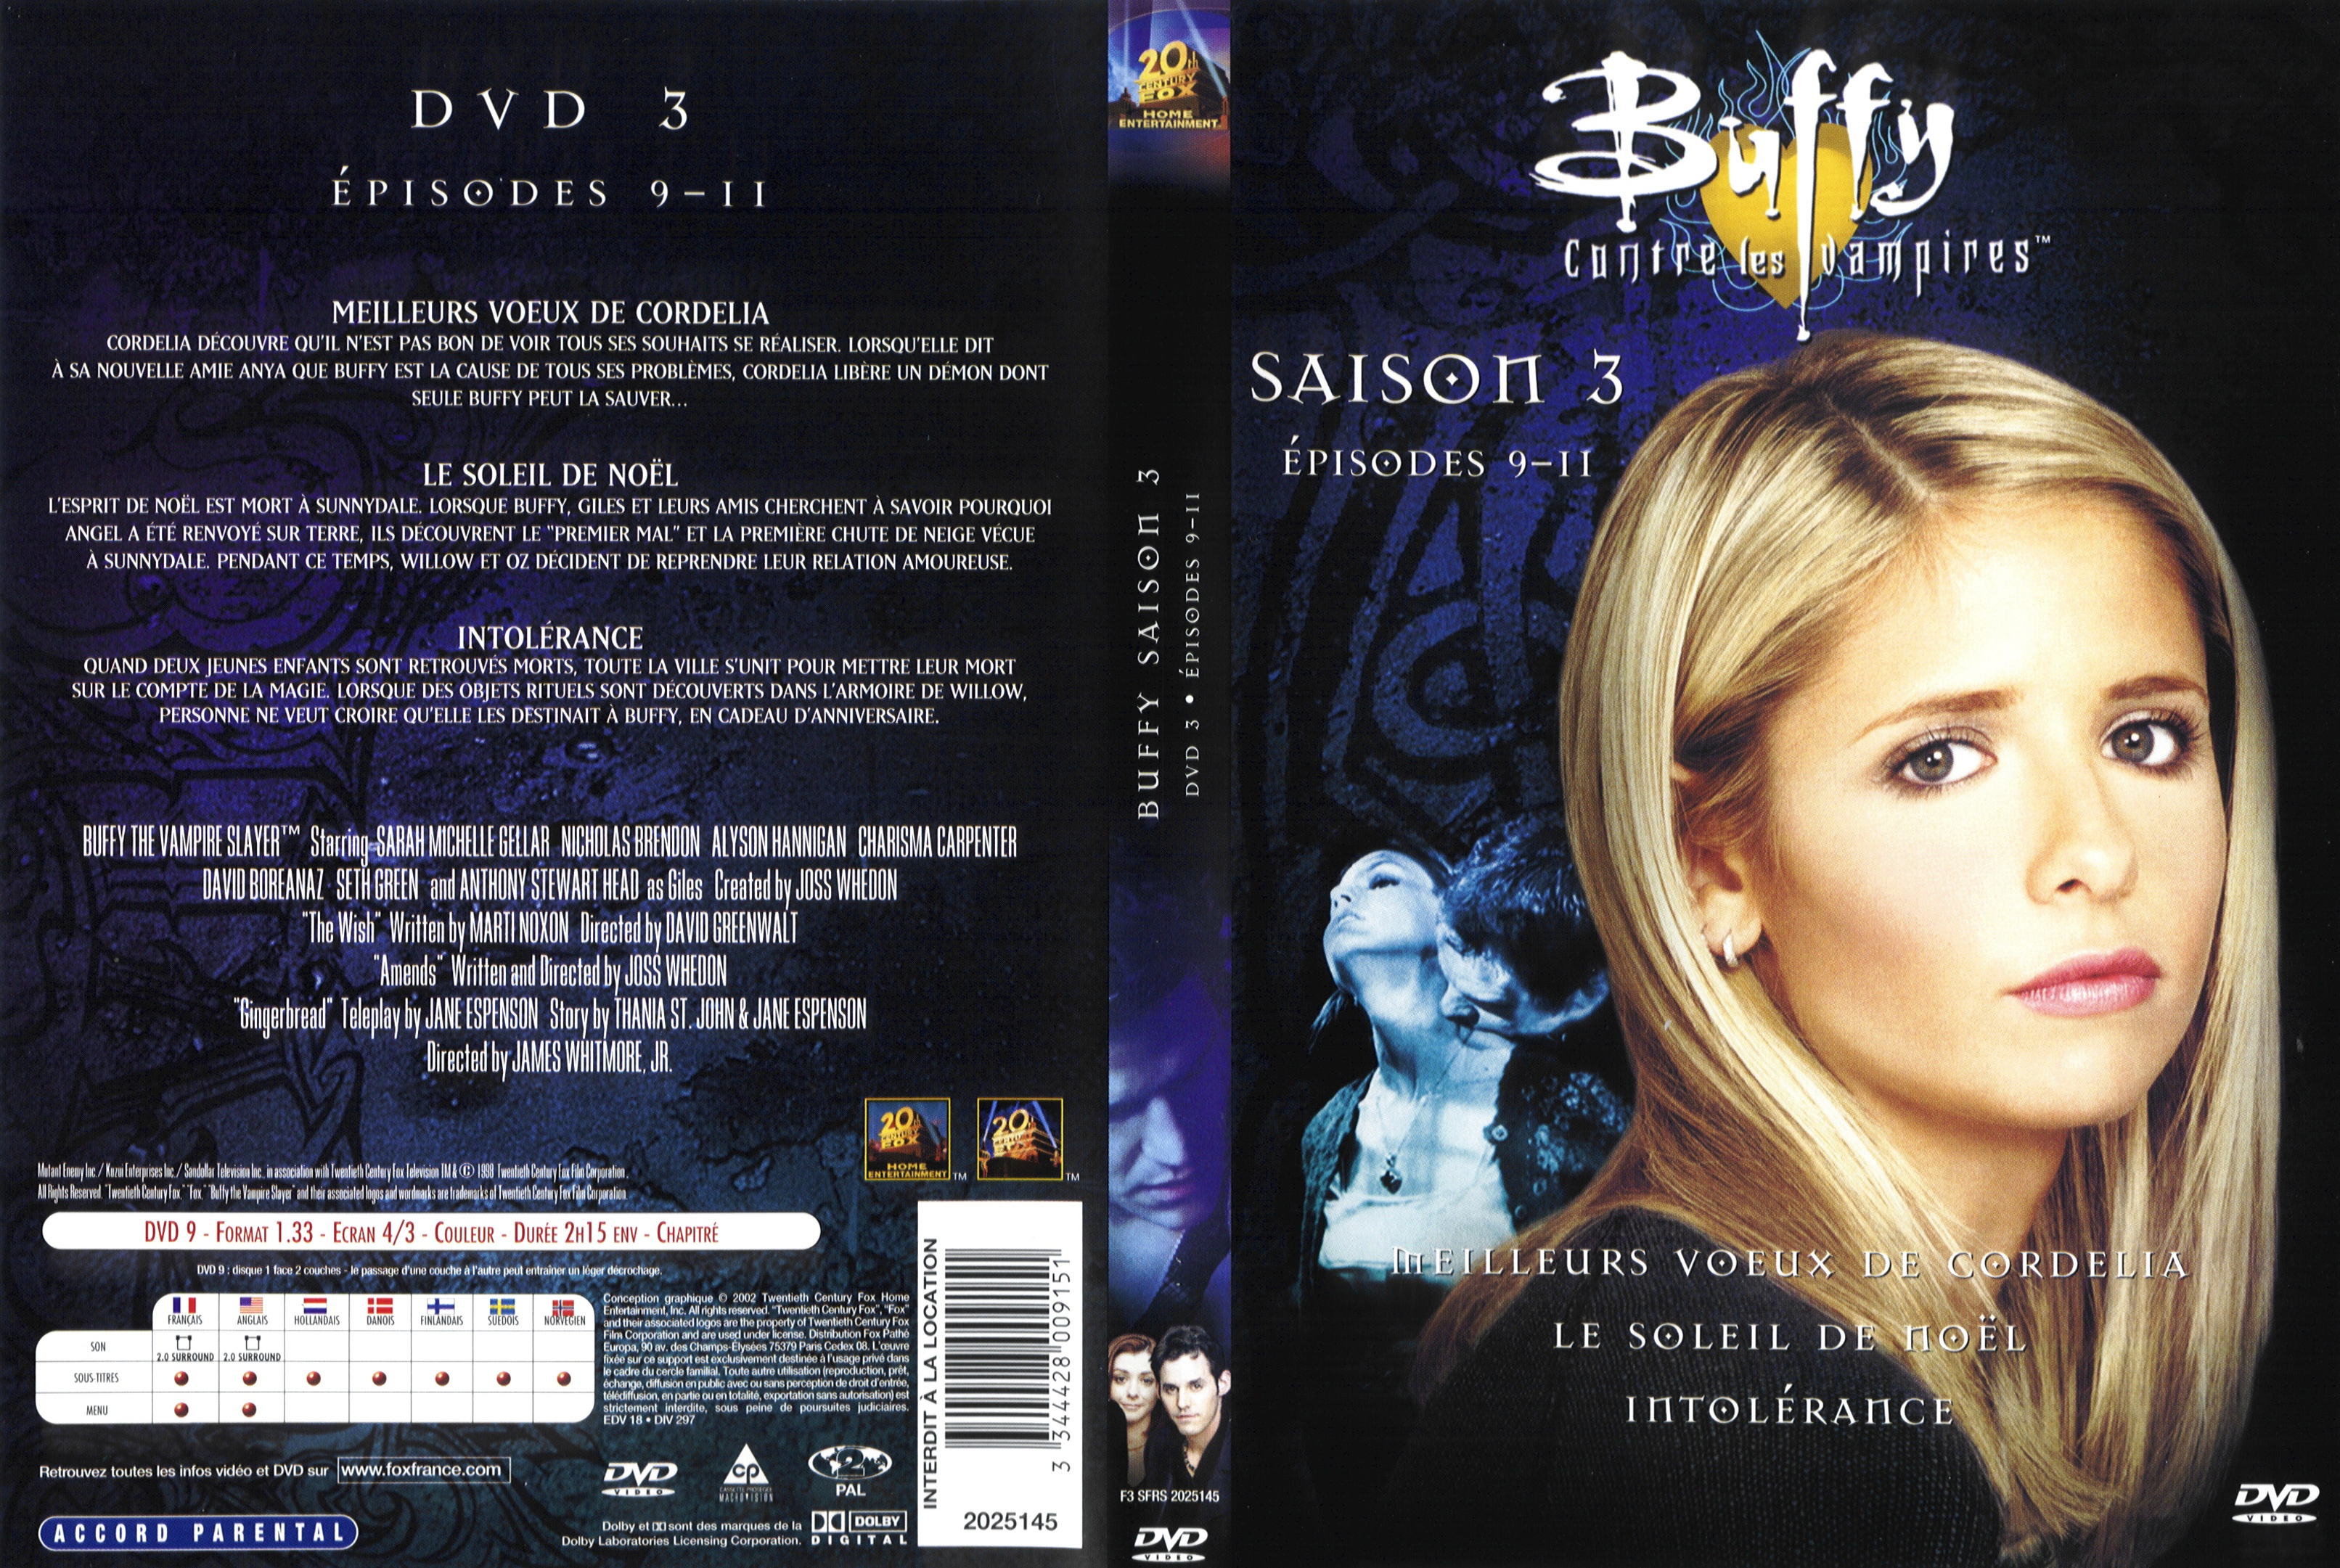 Jaquette DVD Buffy contre les vampires Saison 3 DVD 3